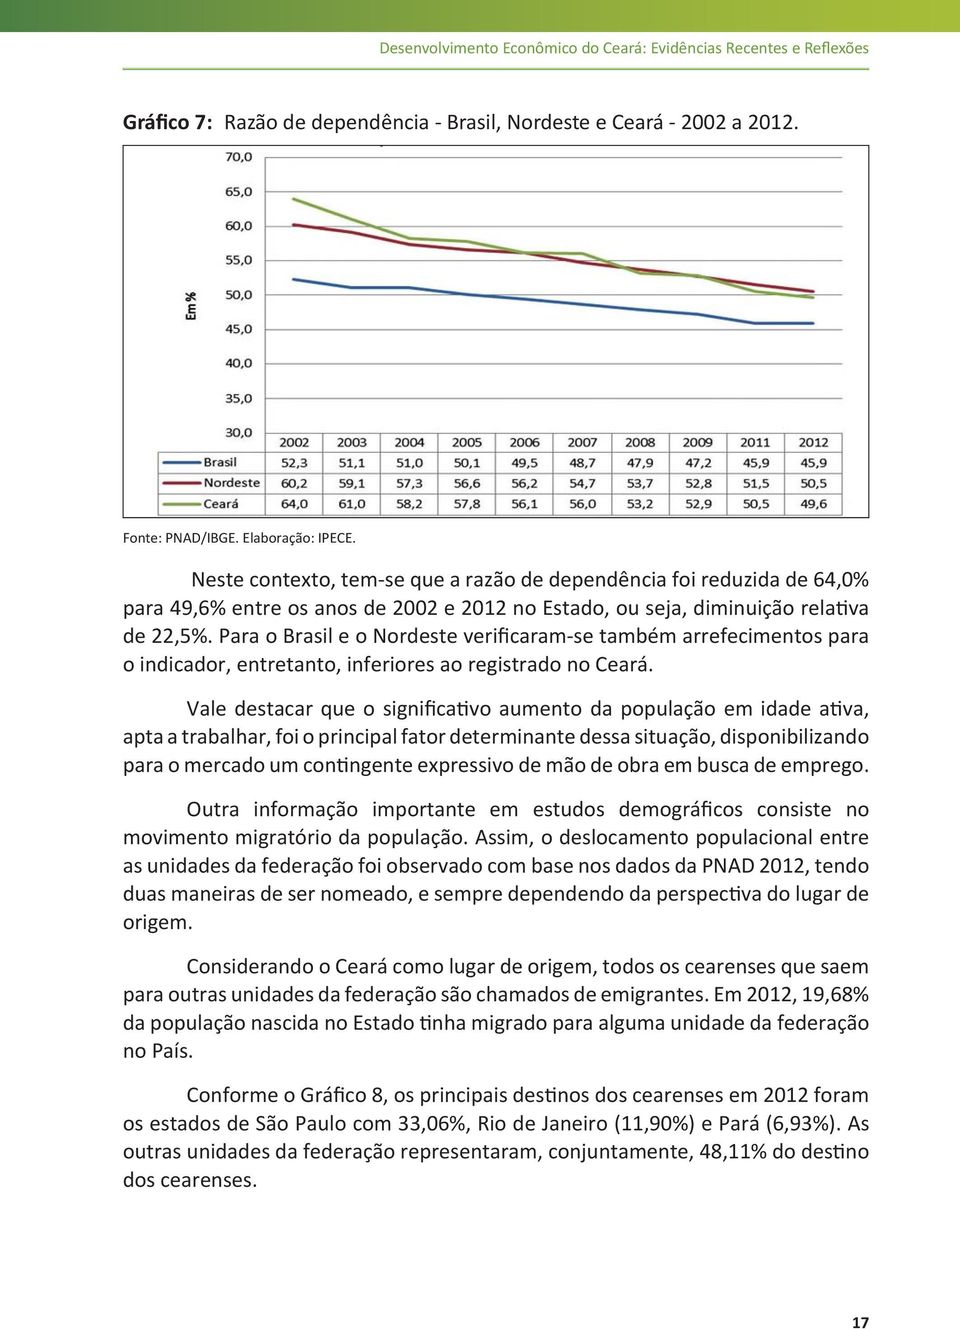 Para o Brasil e o Nordeste verificaram-se também arrefecimentos para o indicador, entretanto, inferiores ao registrado no Ceará.